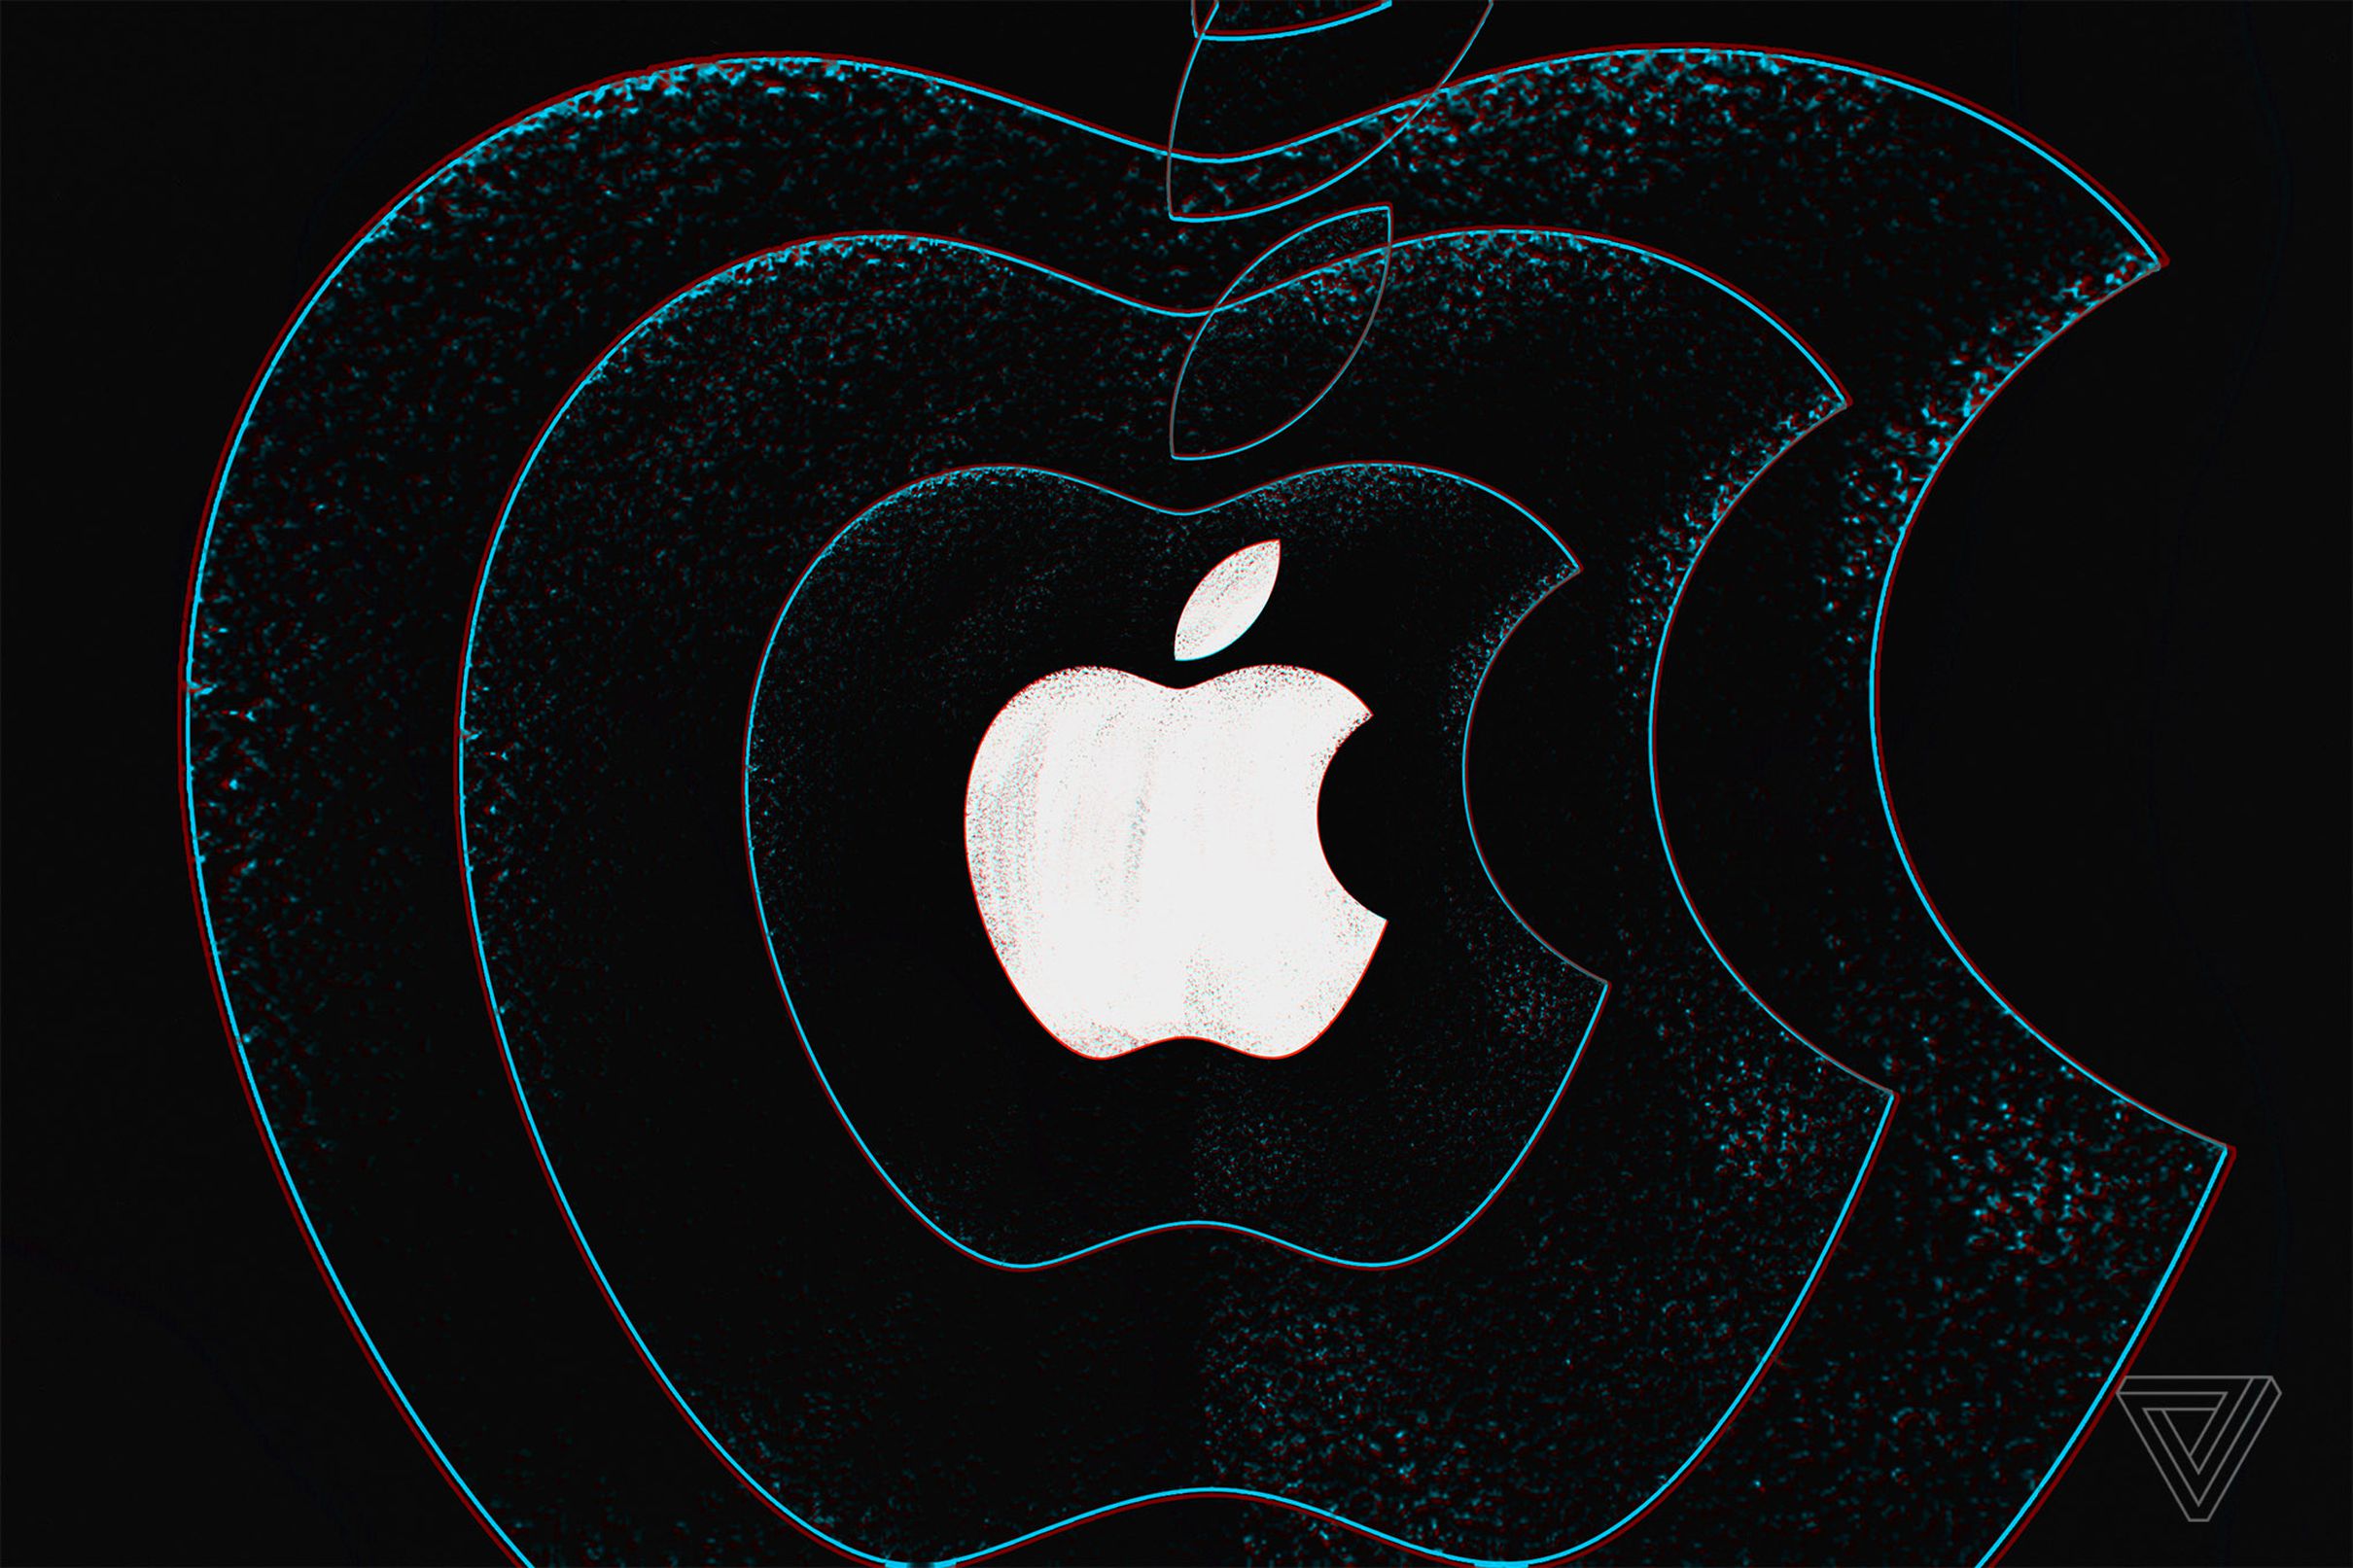 Ming-Chi Kuo cập nhật các dự đoán về Apple cho năm sau: Kính AR, iPhone SE 2, iPad Pro và MacBook 16-inch